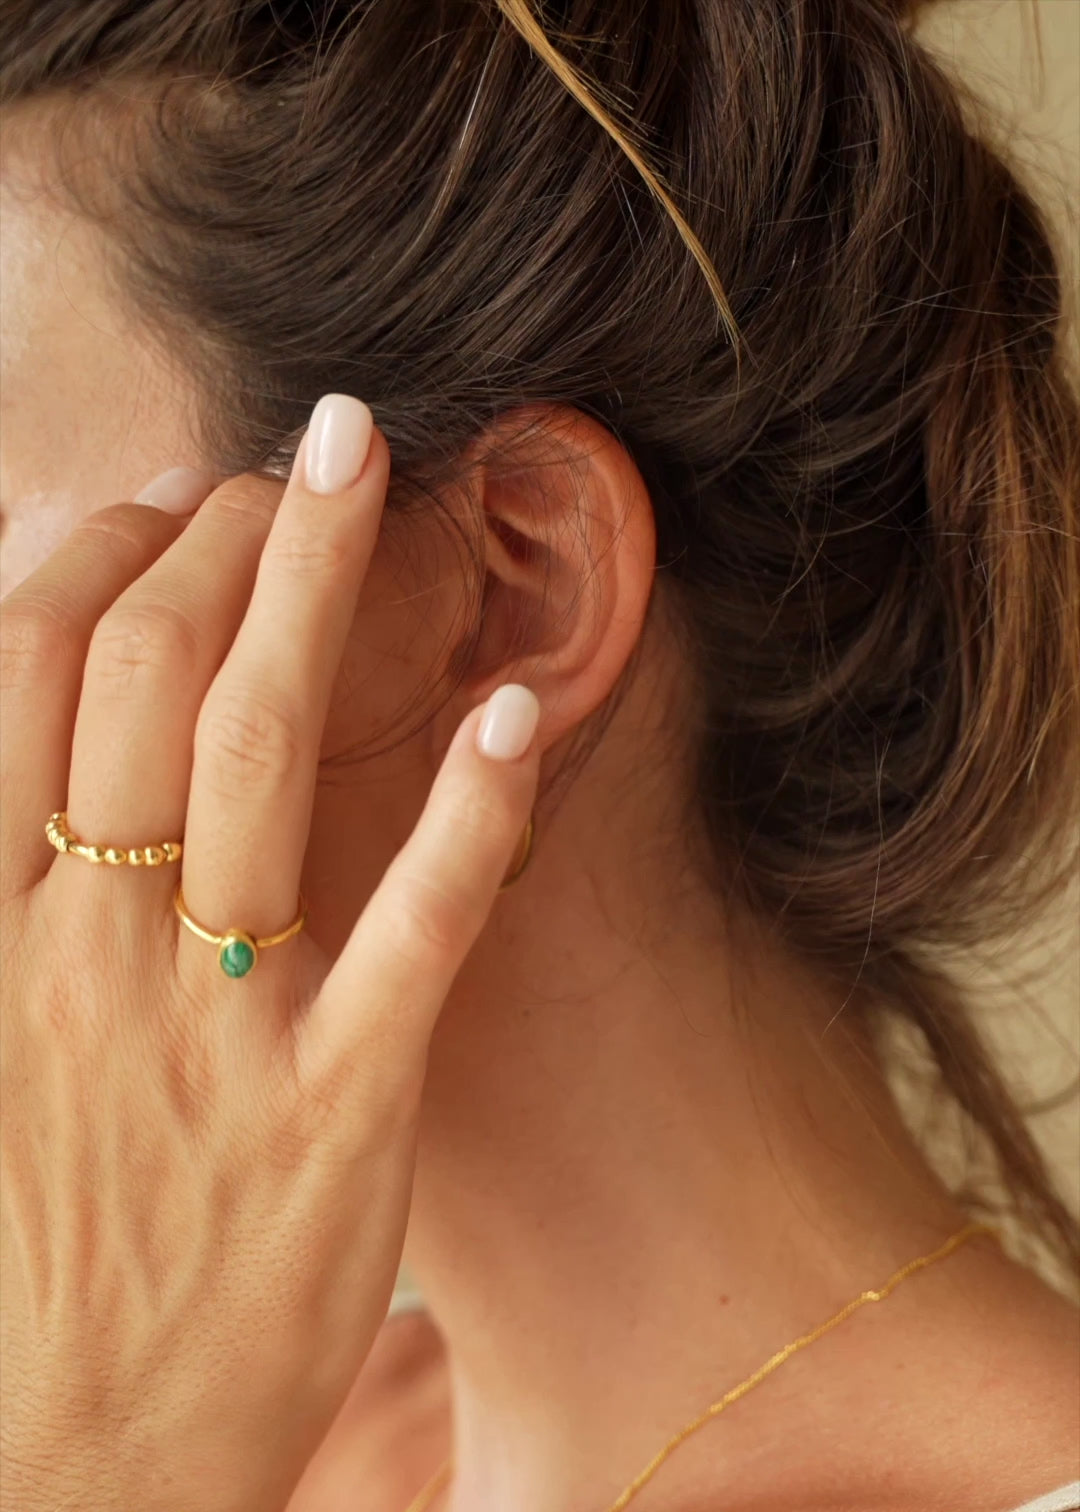 Goldener Malachit Ring | Ring mit Malachit Stein | Schmuck aus Bali | Handgemachter Schmuck online kaufen | Geschenk für Freundin finden | VERLAN Jewellery